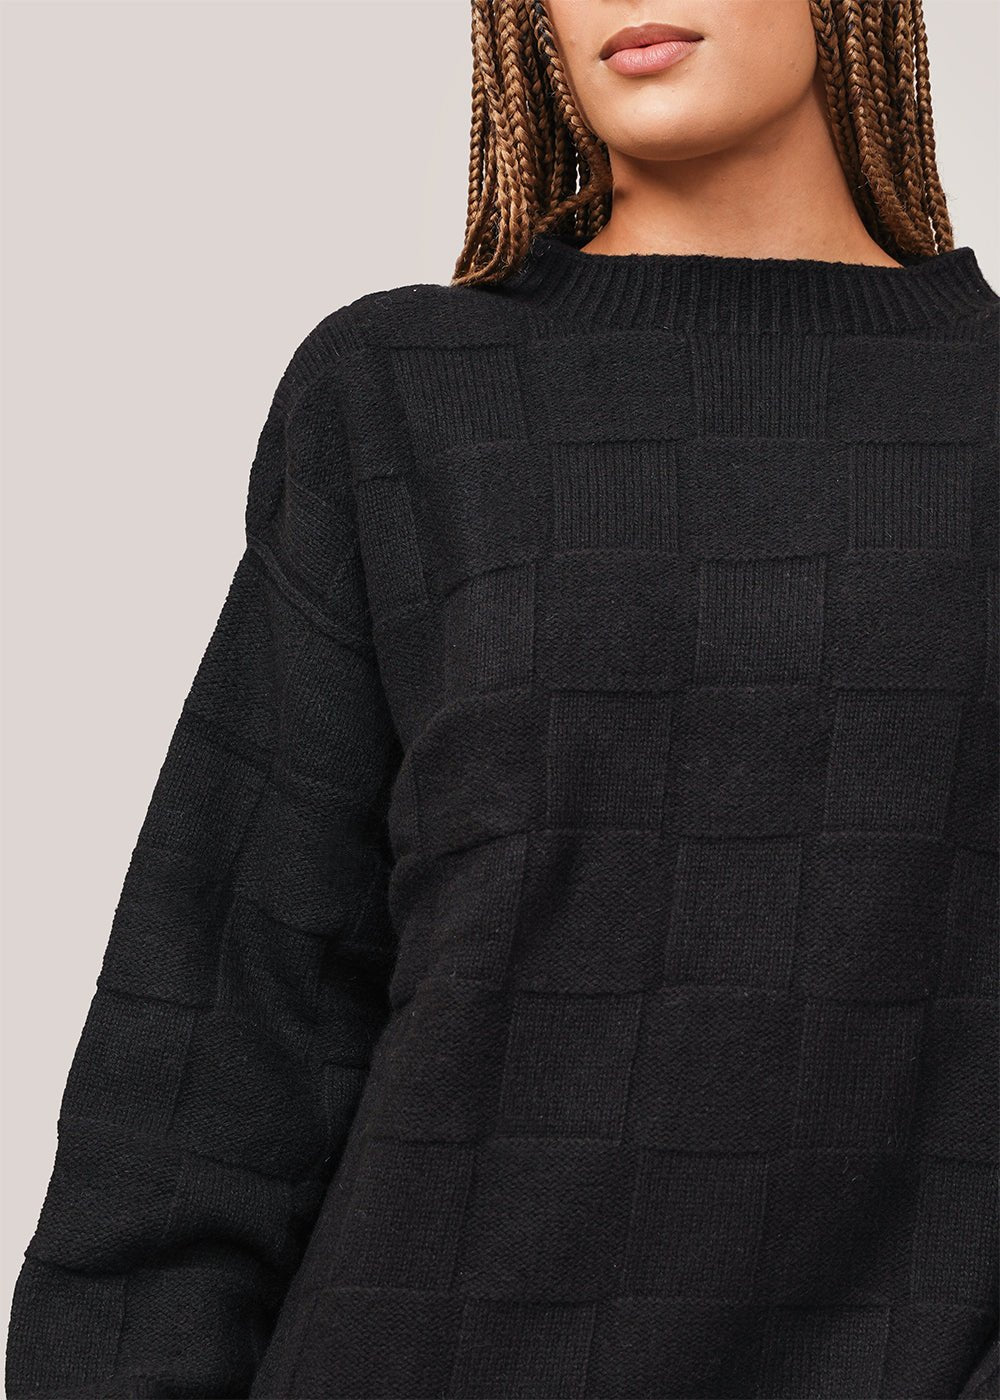 Baserange Black Konak Sweater - New Classics Studios Sustainable Ethical Fashion Canada